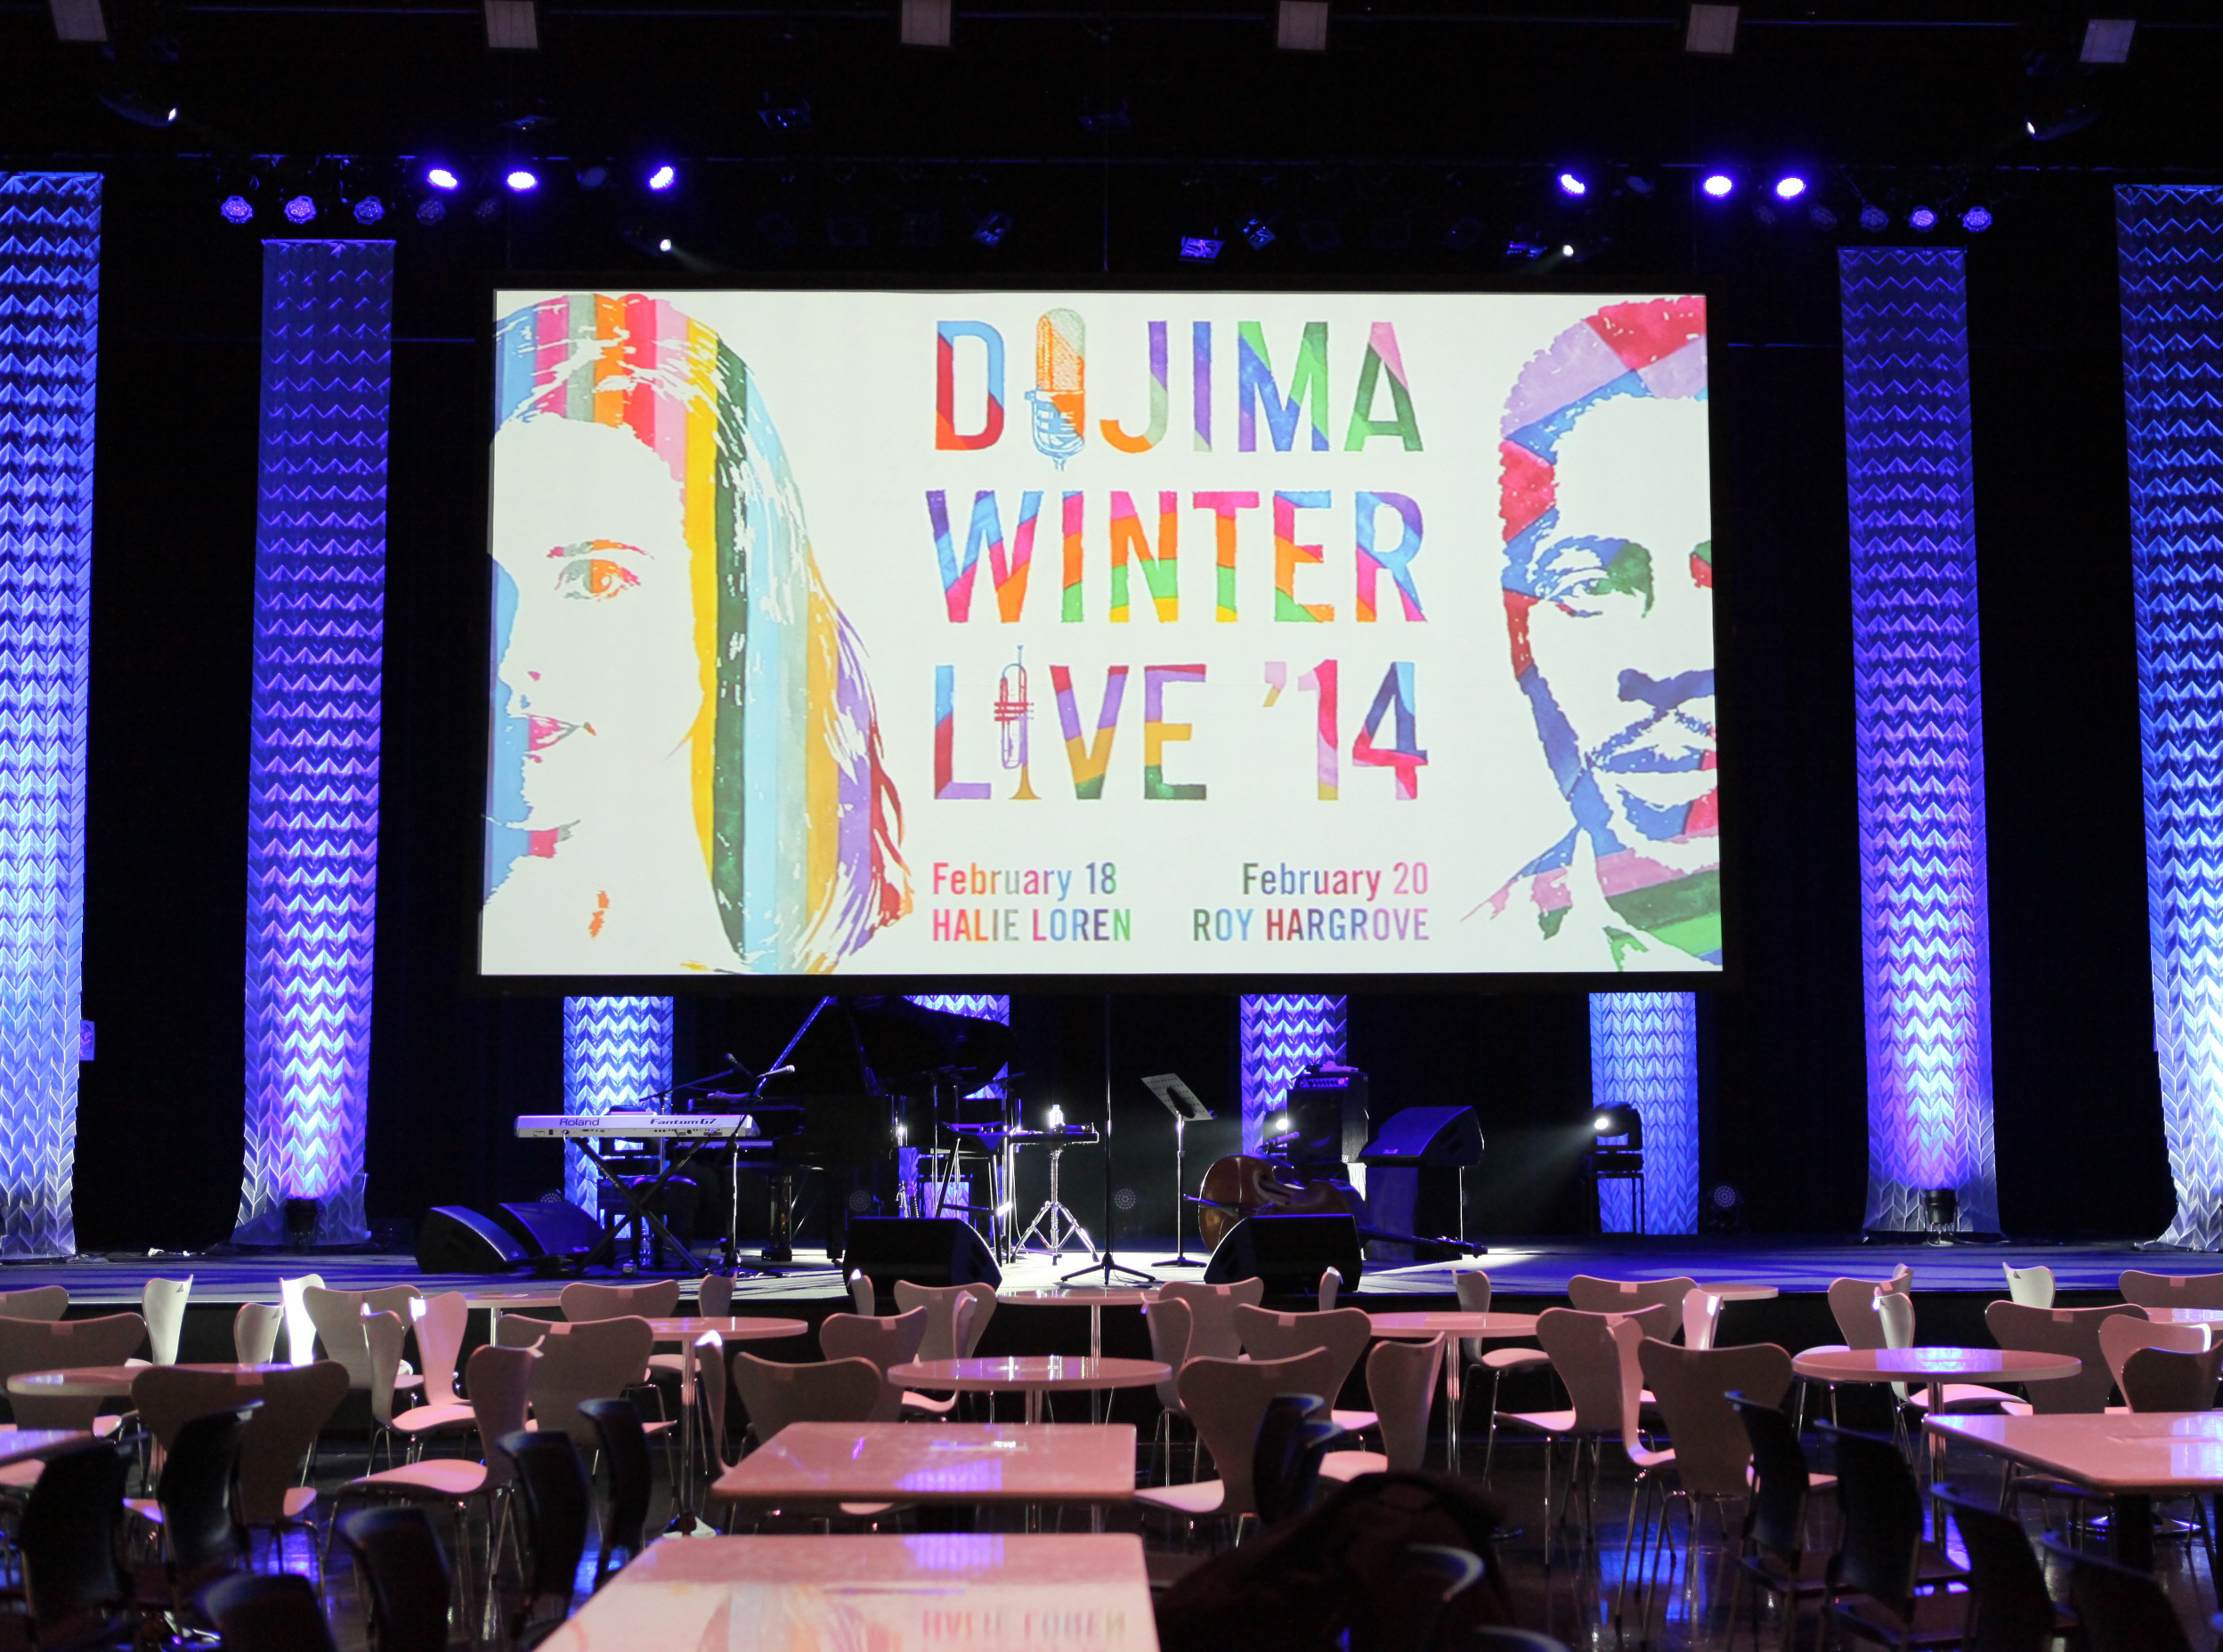 DOJIMA WINTER LIVE 2014